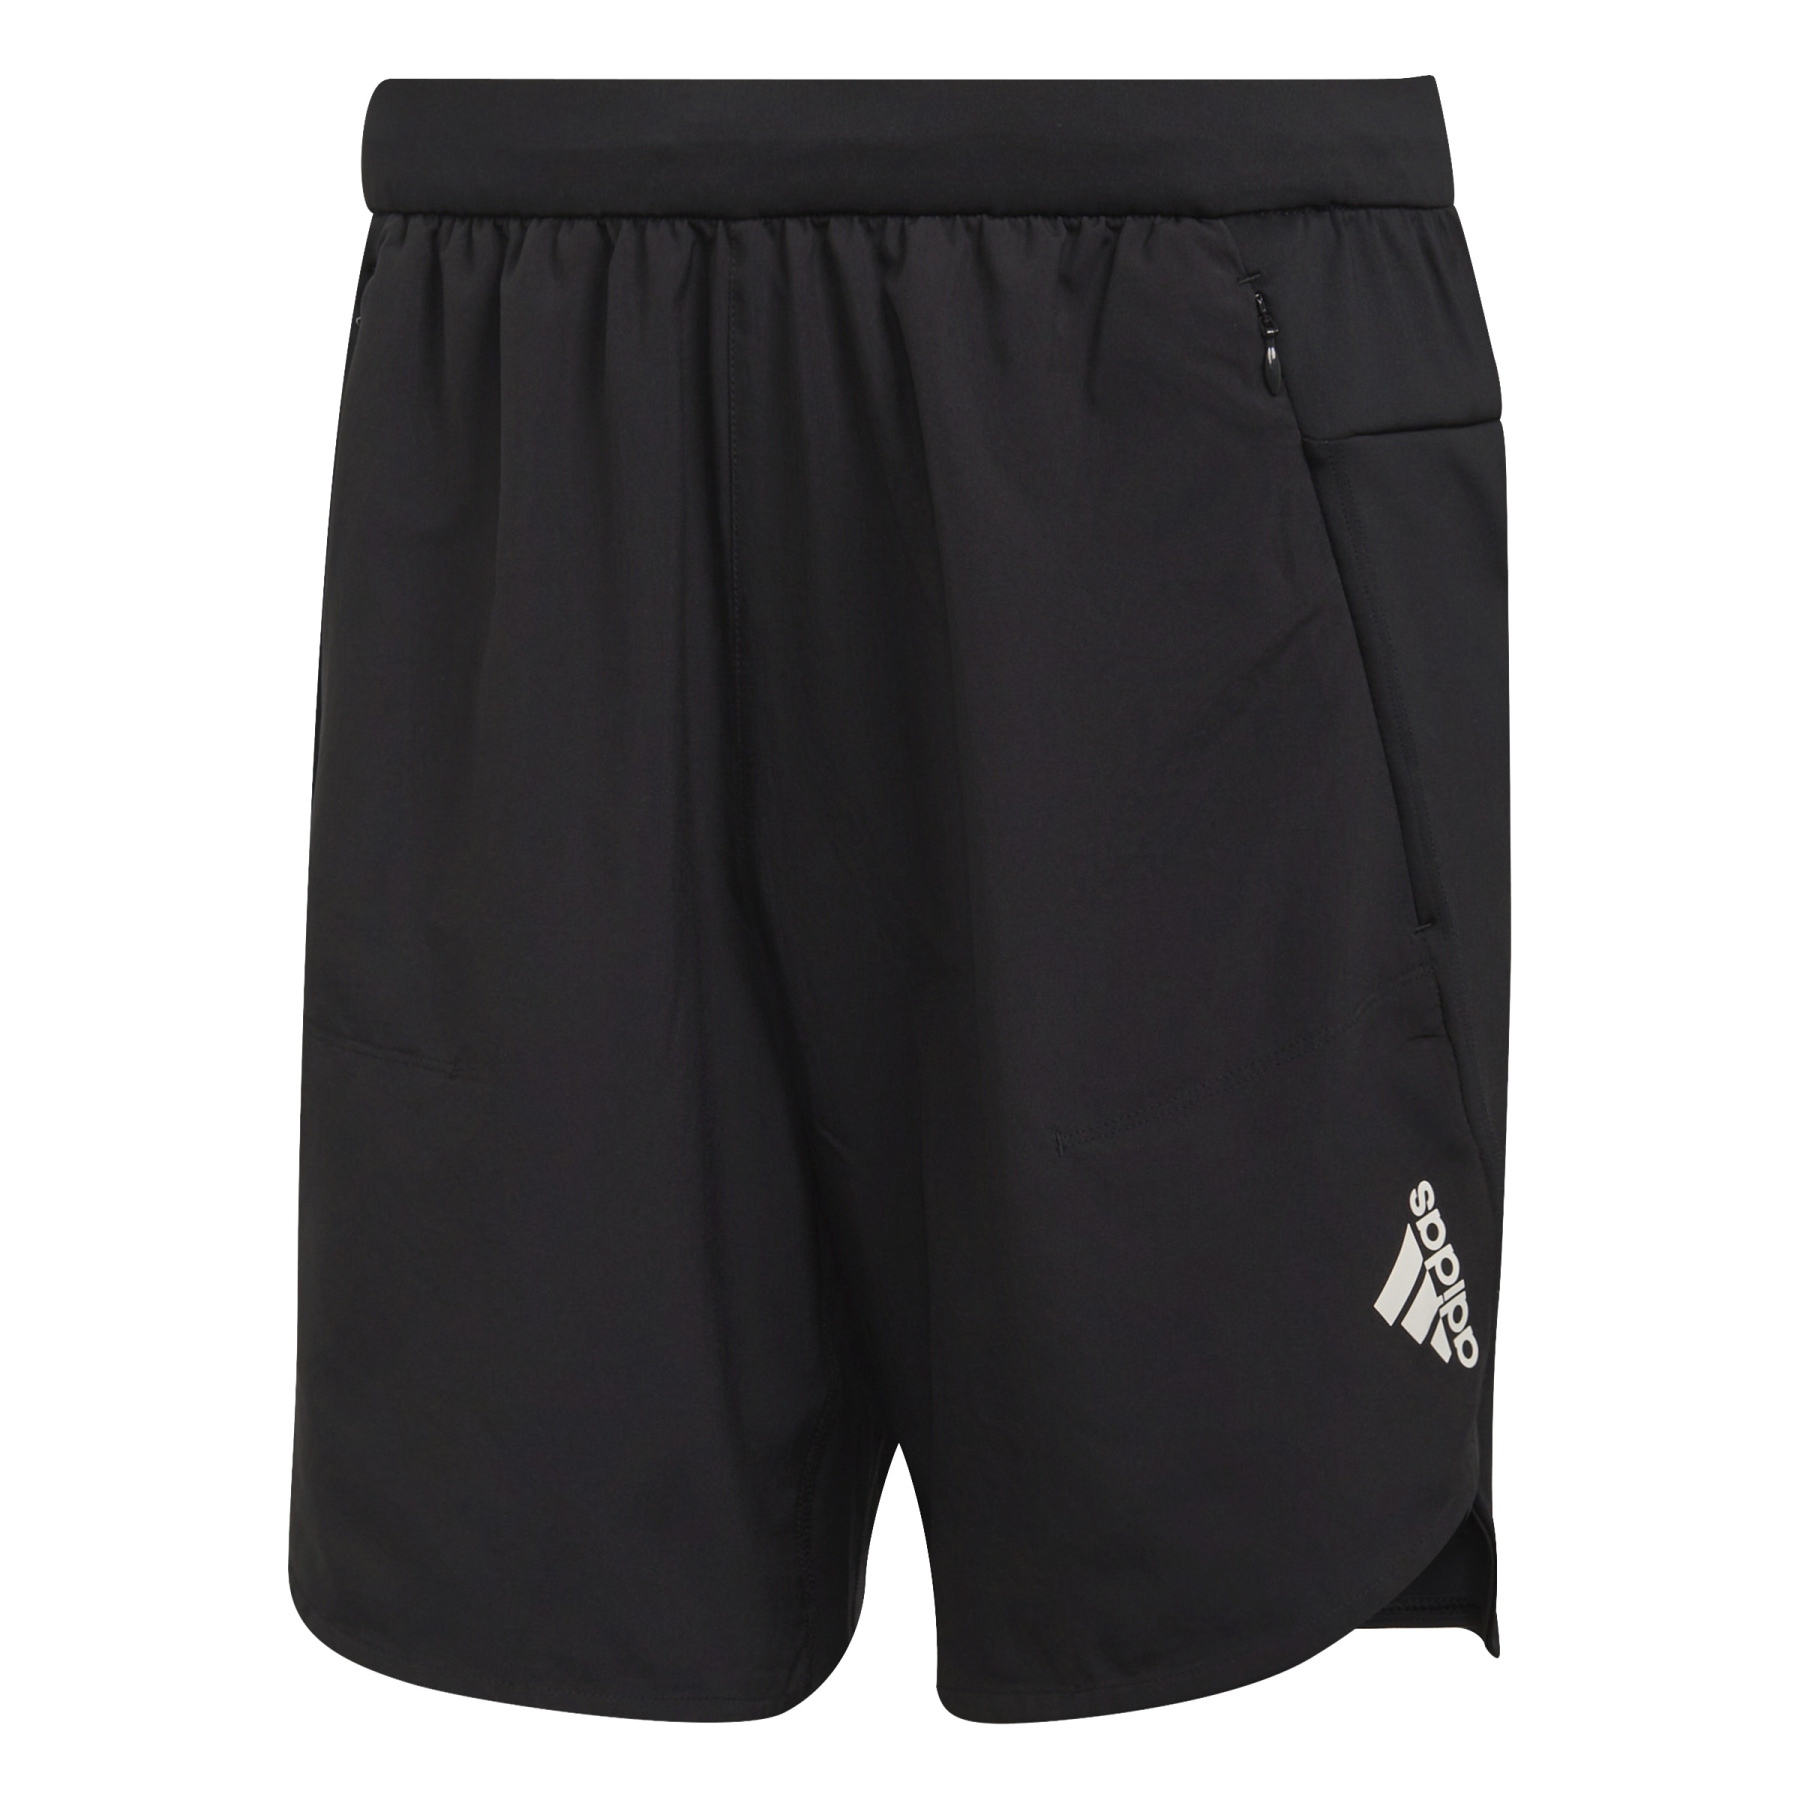 Produktbild von adidas Designed for Training Shorts Herren - schwarz HA6364